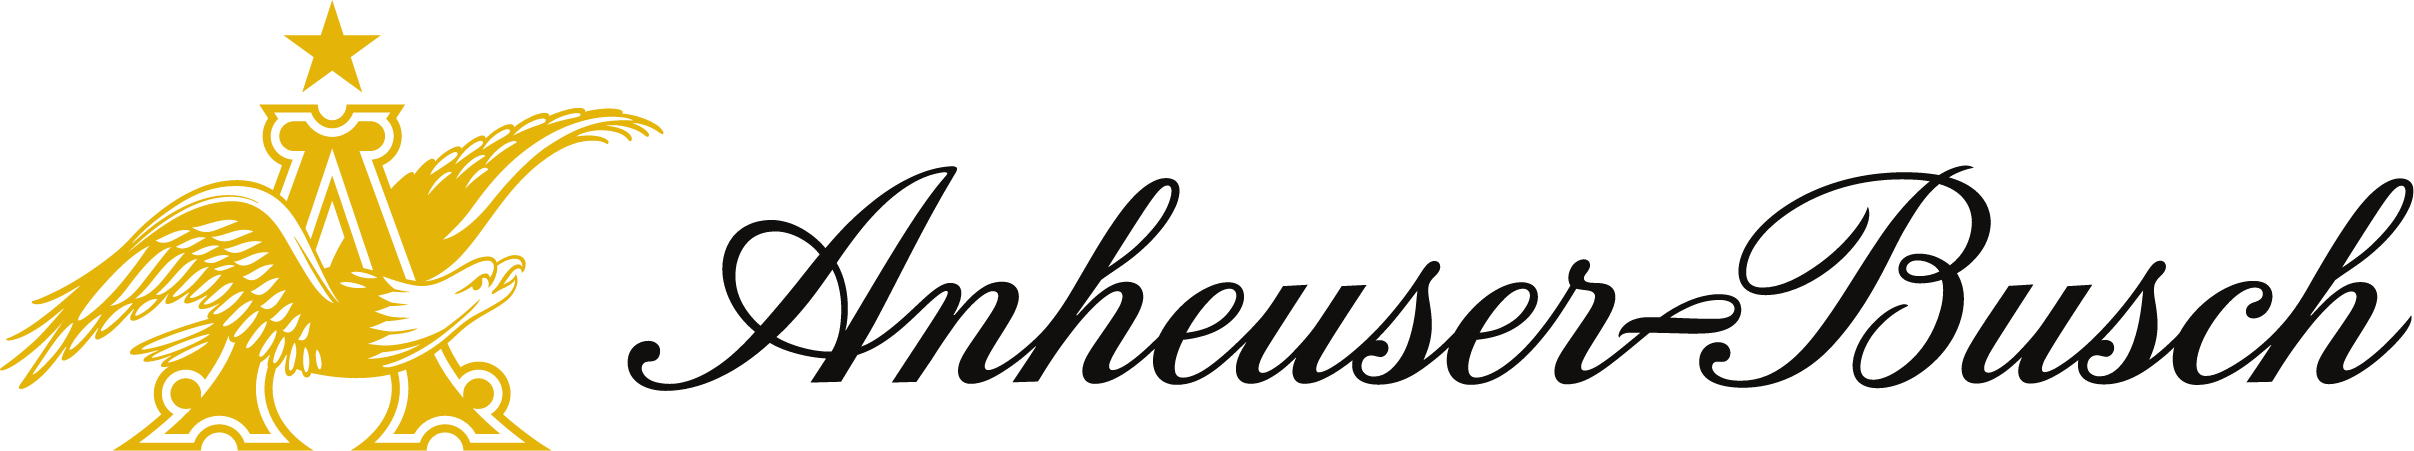 Anheuser Busch-logo